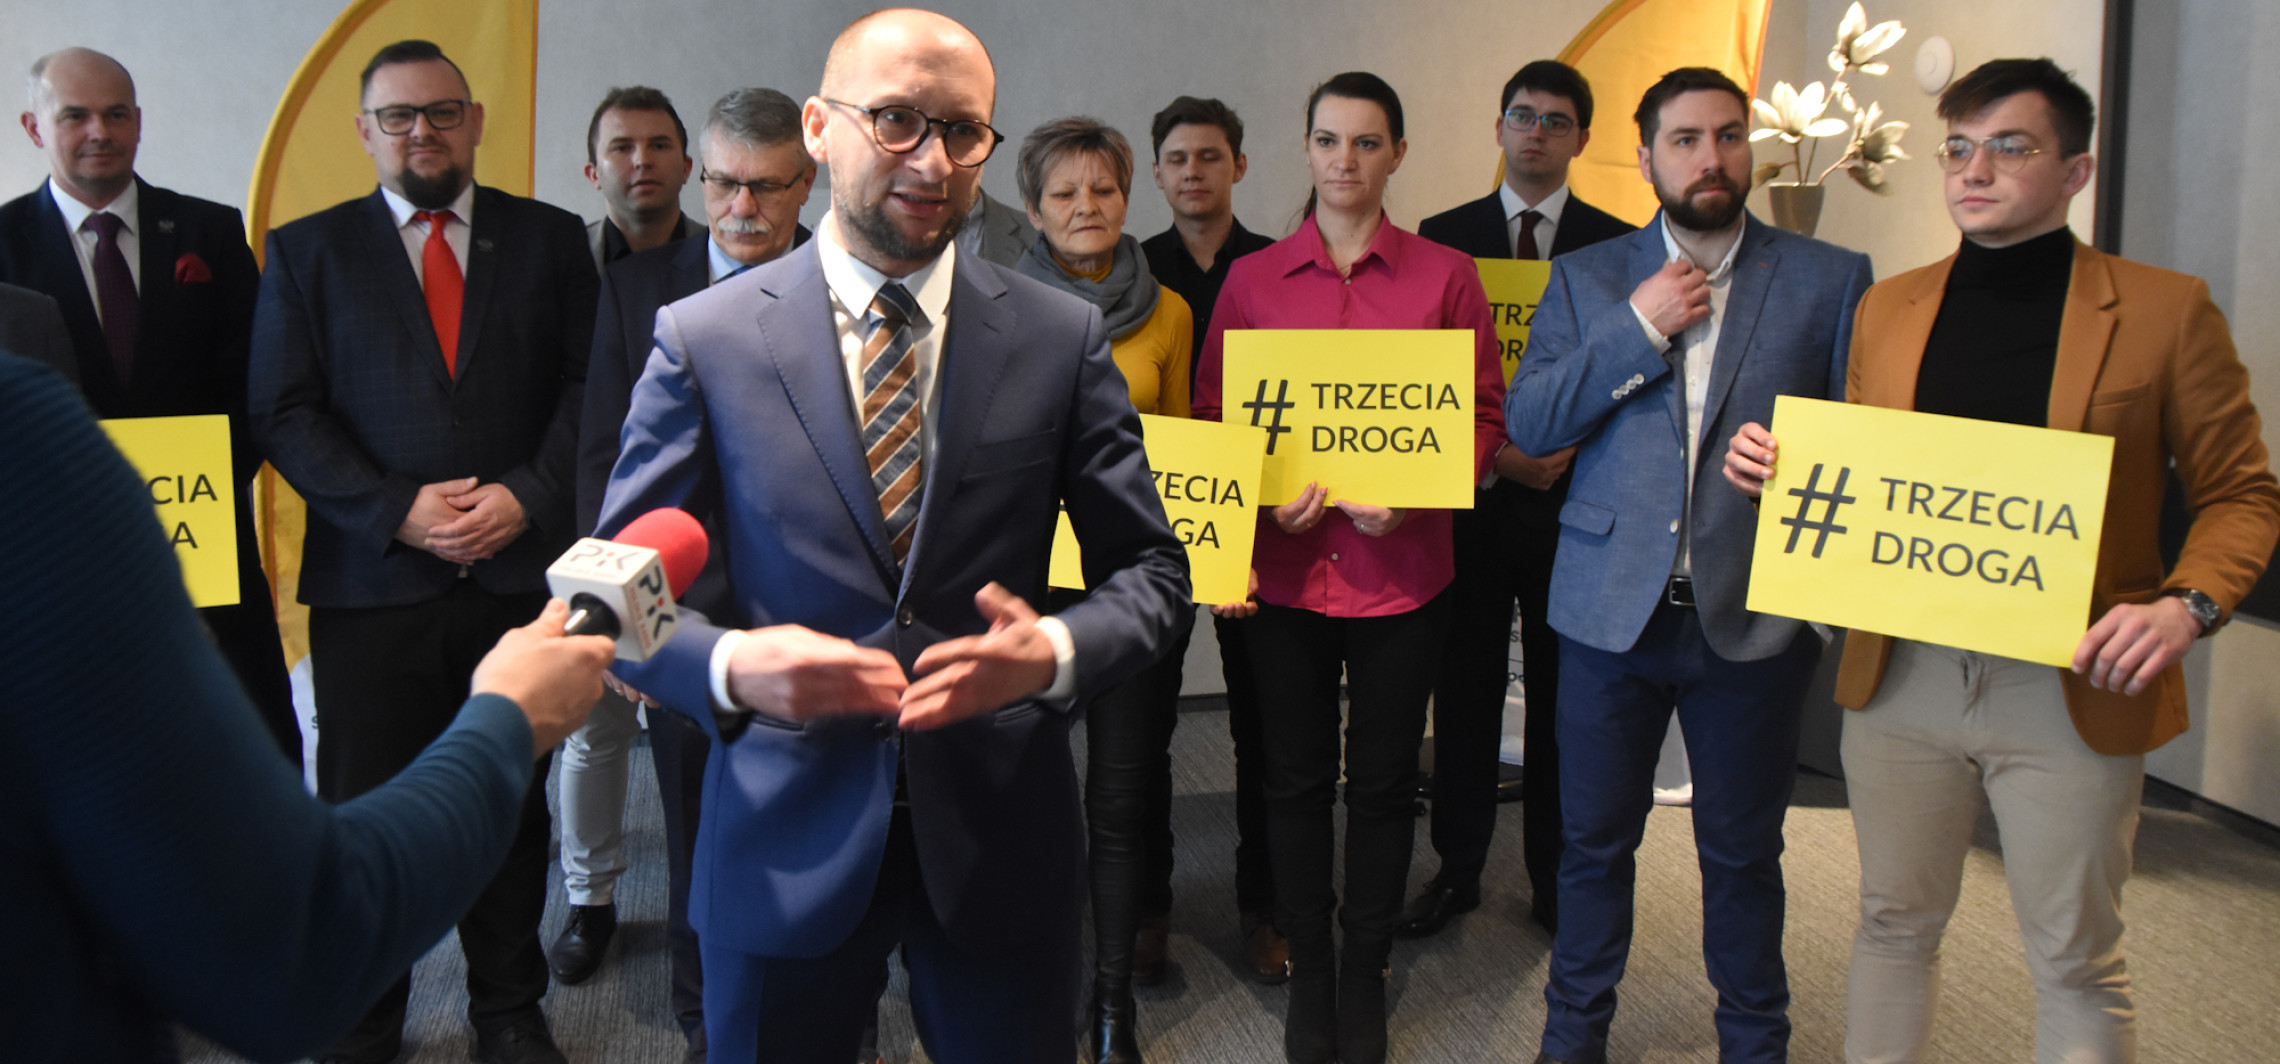 Inowrocław - Trzecia Droga bez kandydata na prezydenta. Kogo poprze?